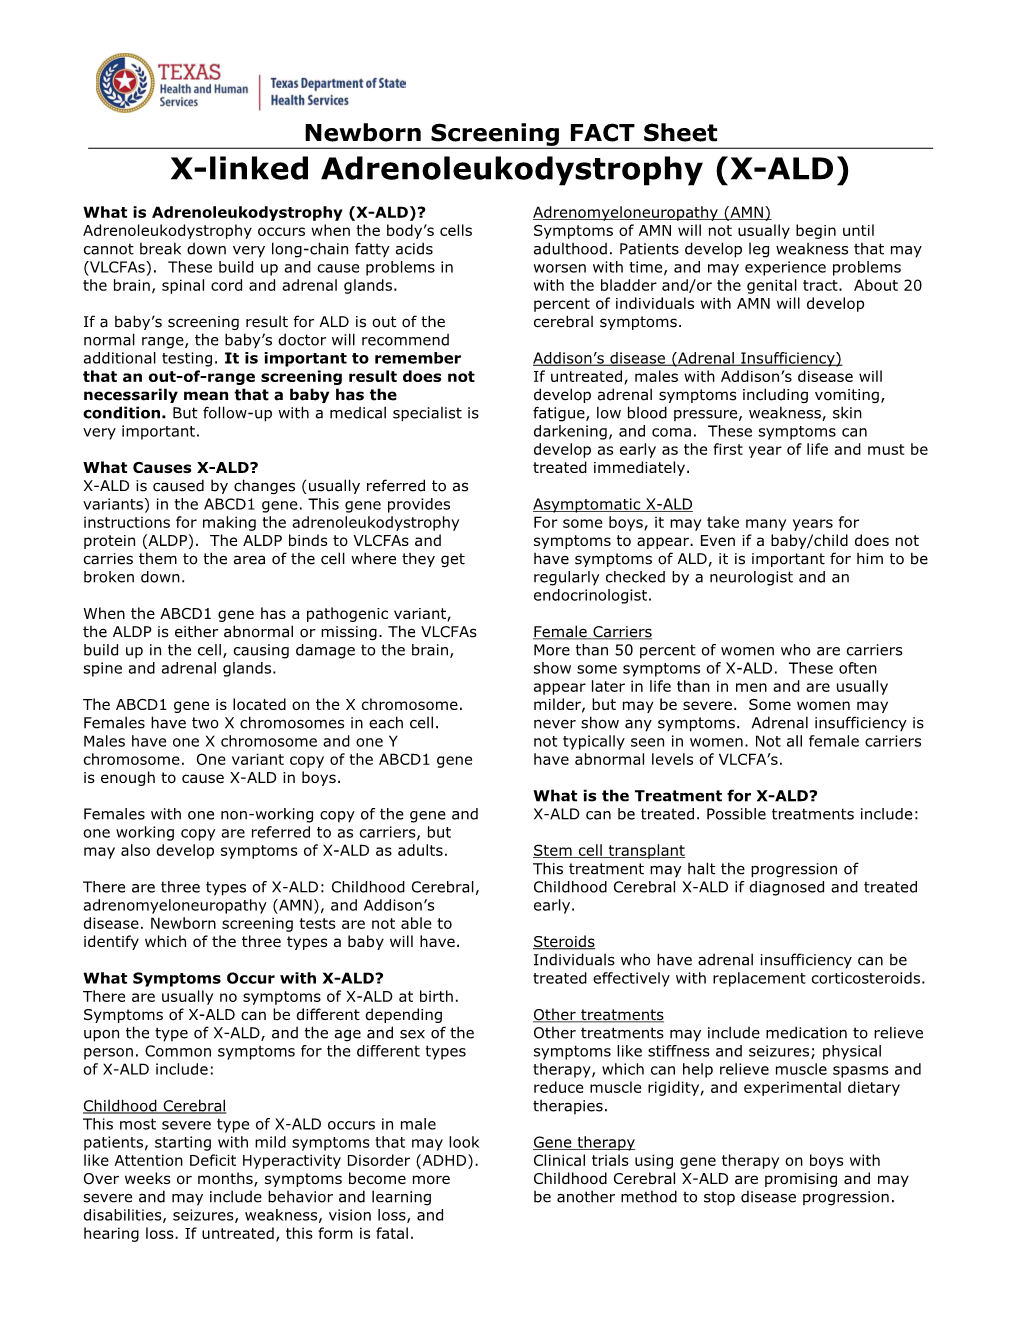 X-Linked Adrenoleukodystrophy (X-ALD)